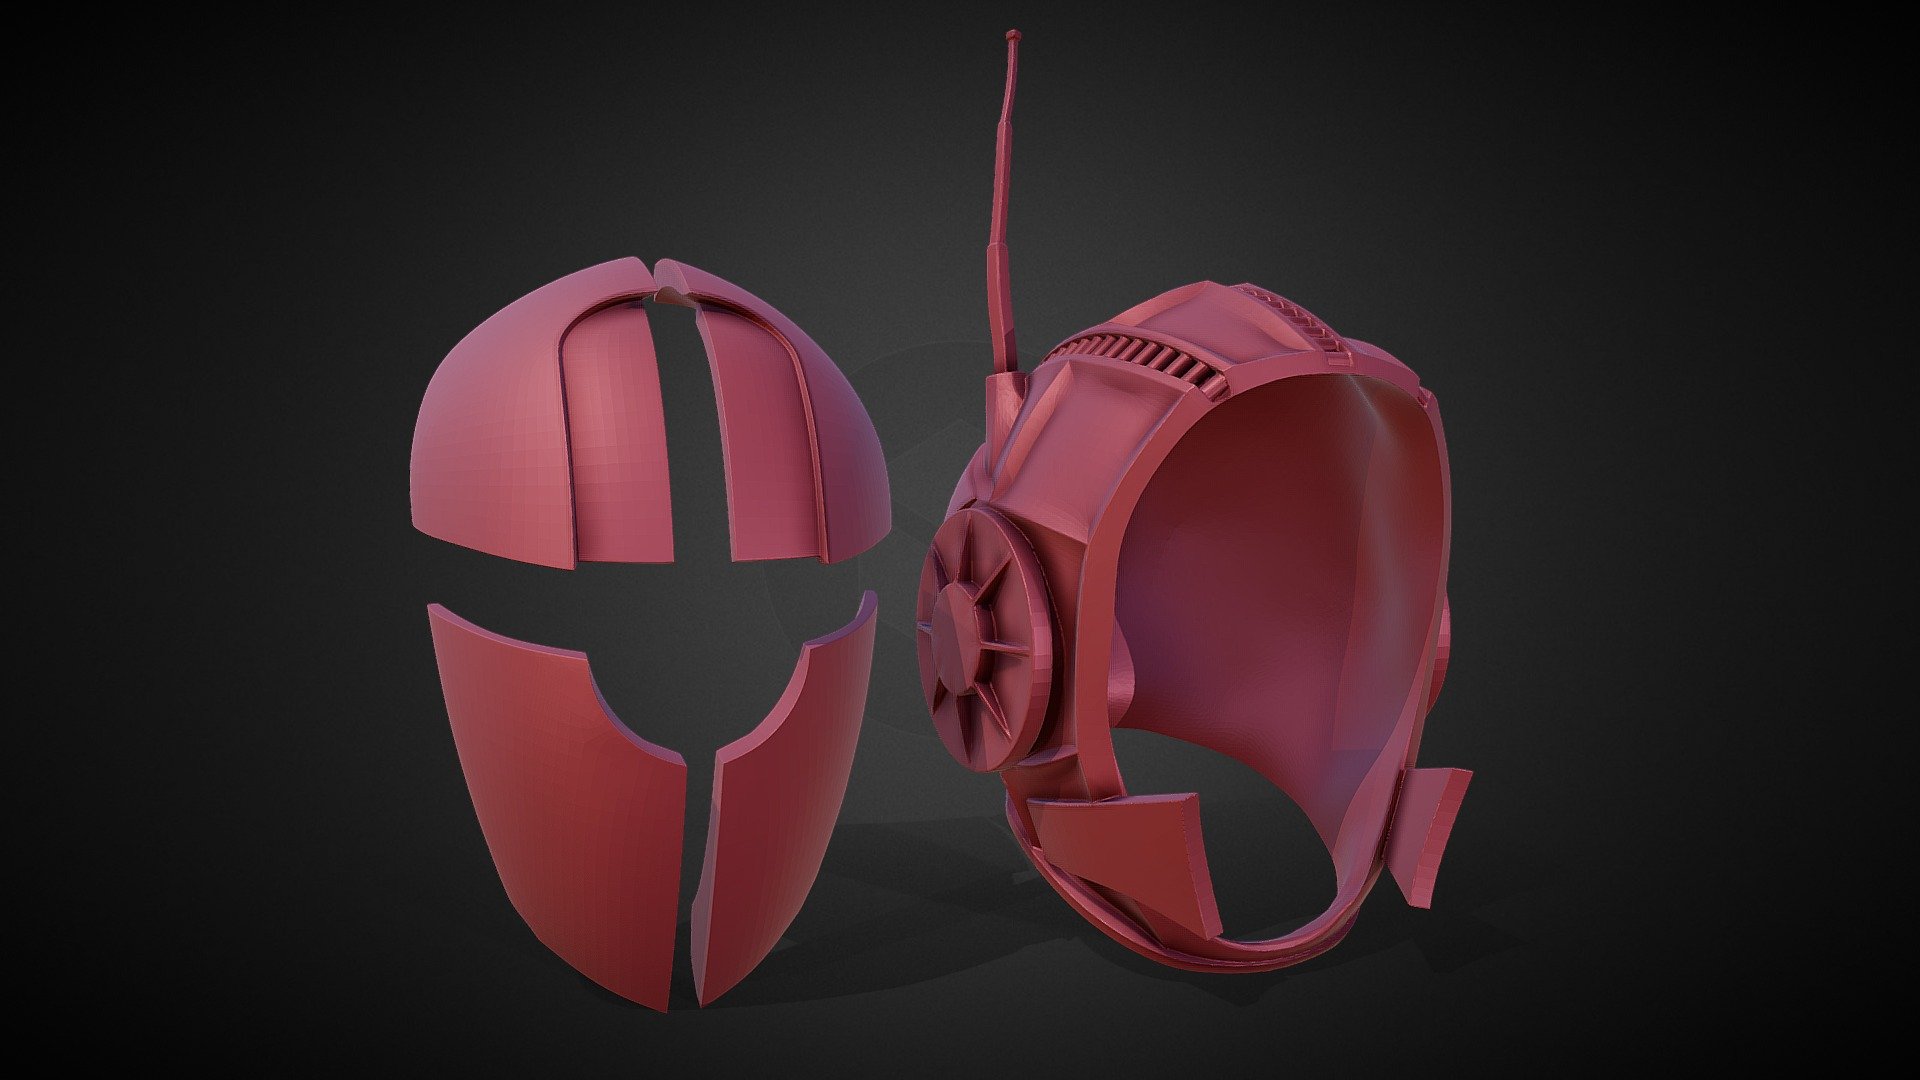 3D printable assaultron helmet from Fallout - Fallout Assaultron Helmet 3D printable - Buy Royalty Free 3D model by Ginger L.v.A (@gingerlva) 3d model